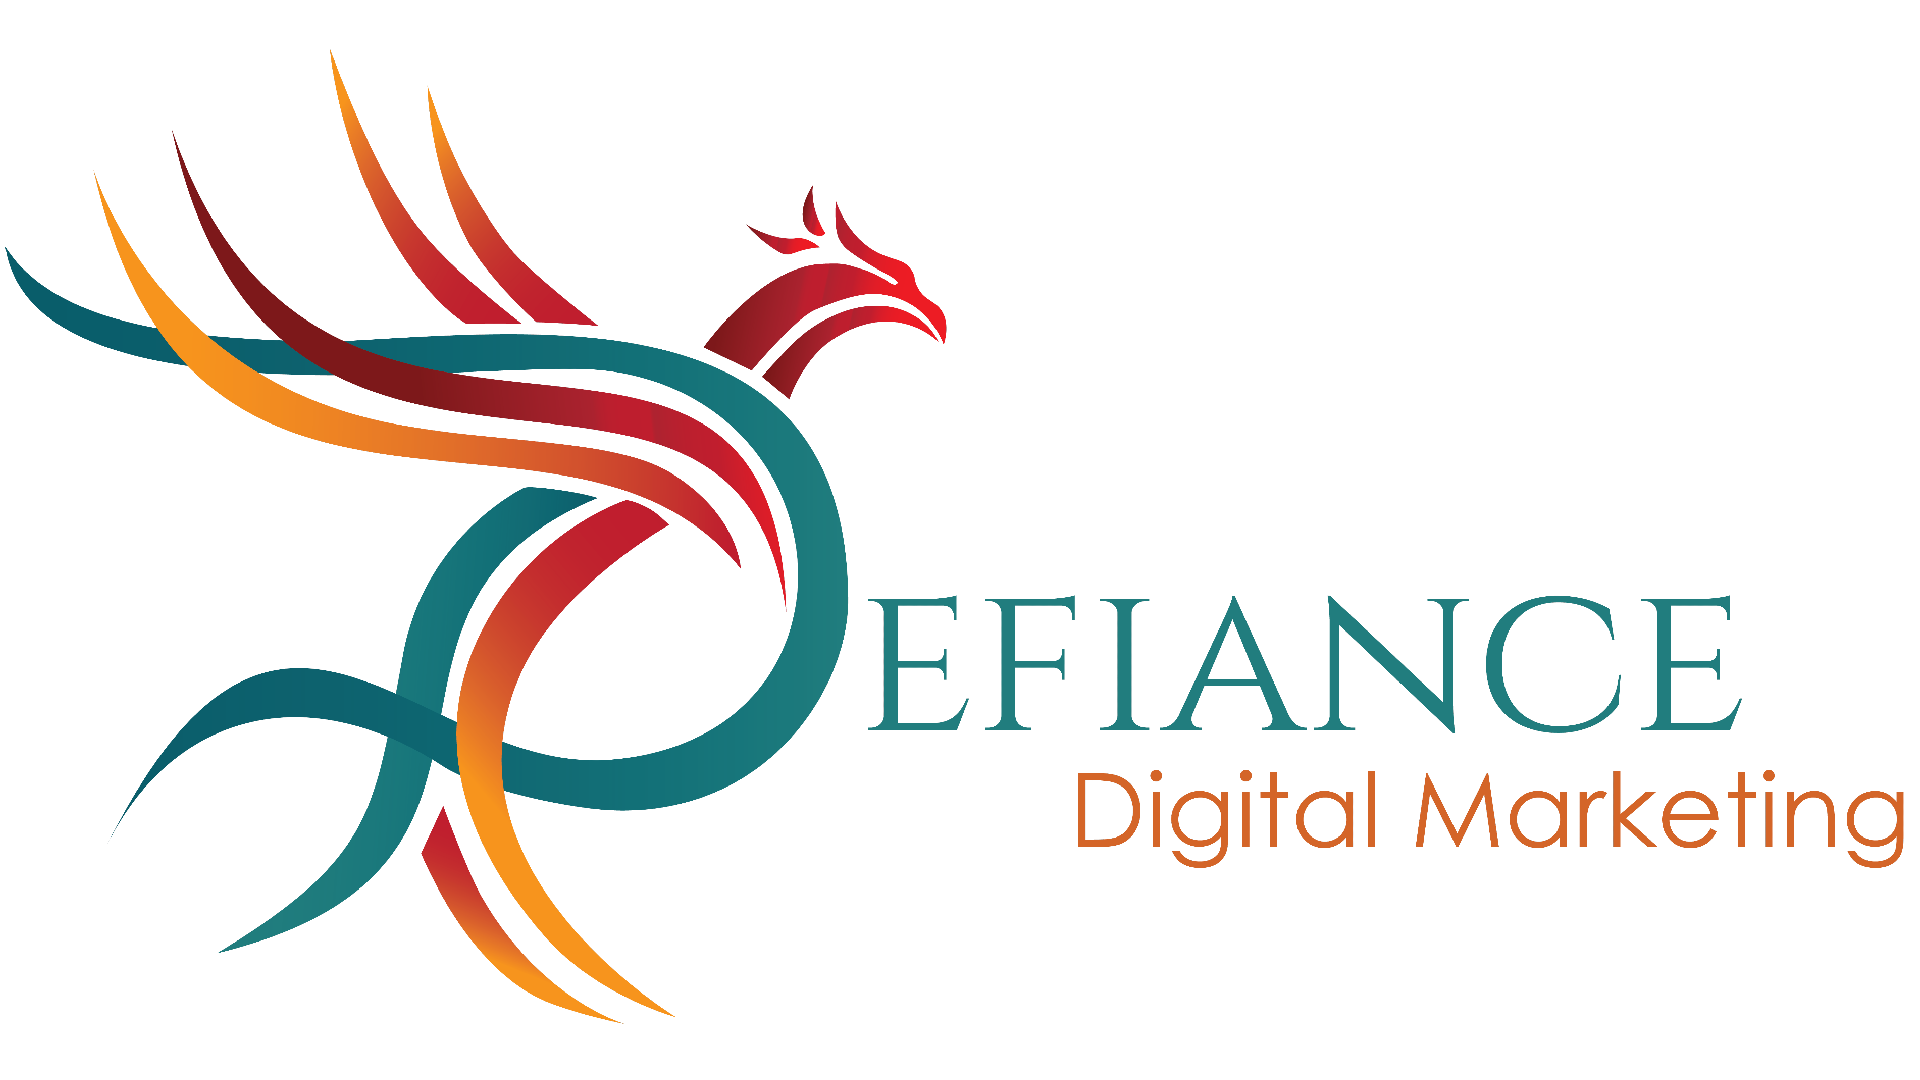 Defiance Digital Marketing